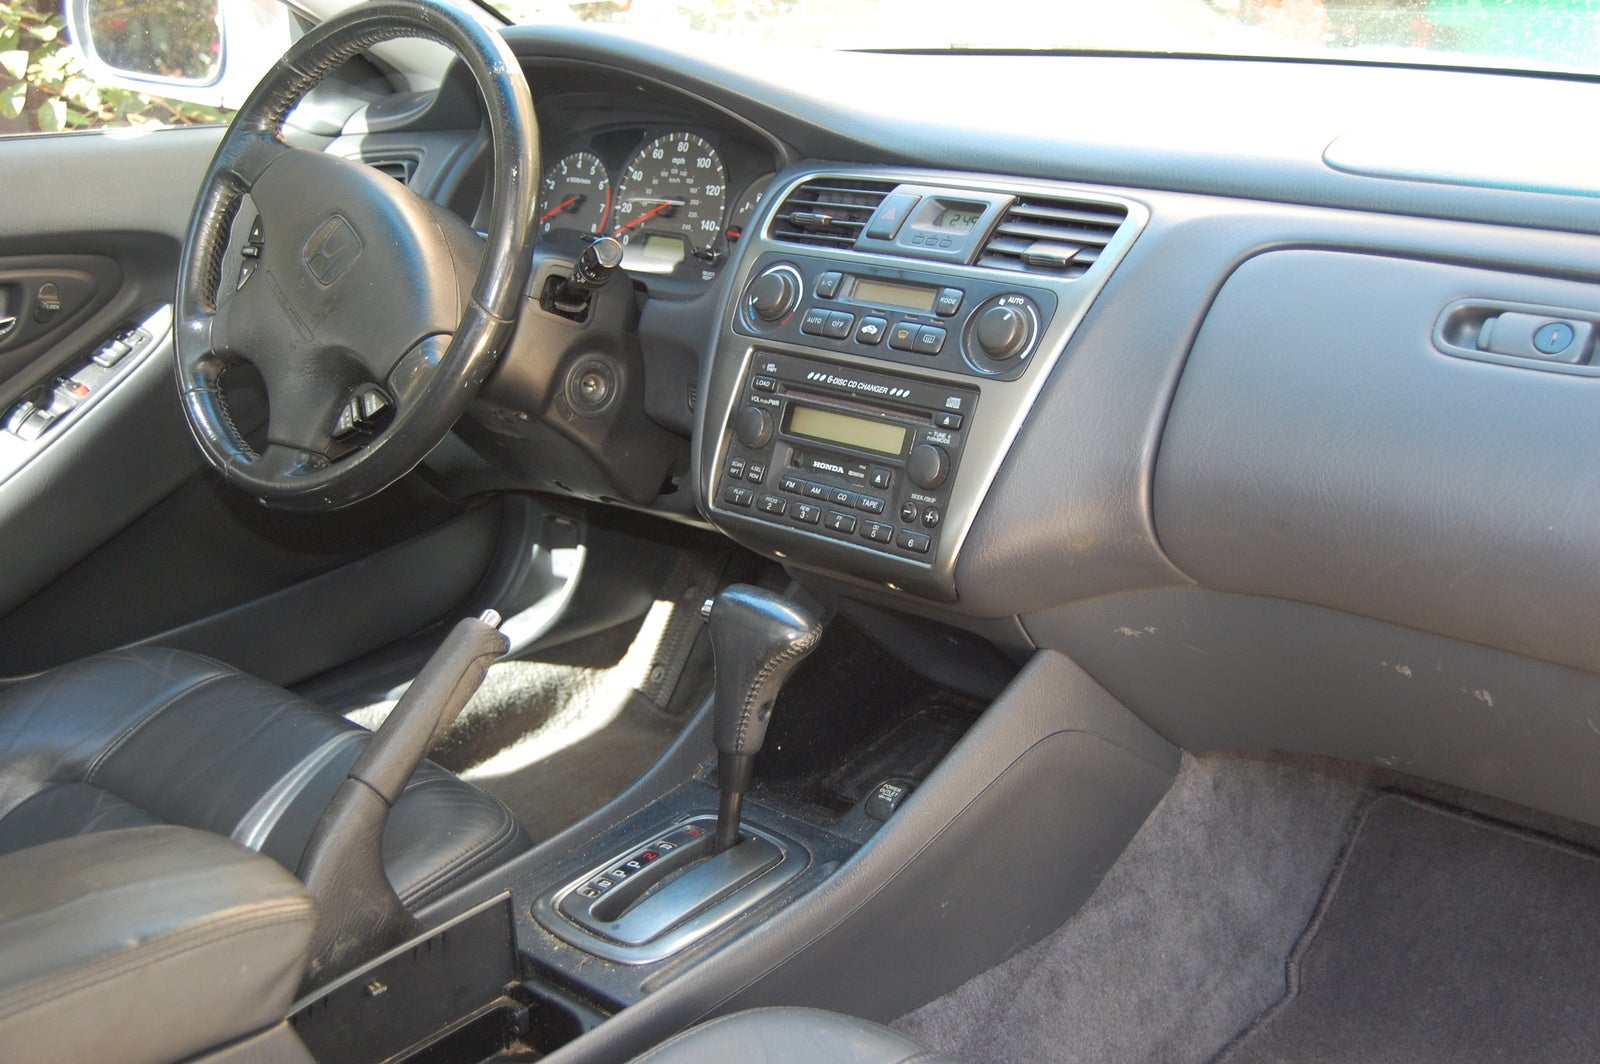 2001 Honda accord ex v6 coupe interior #3